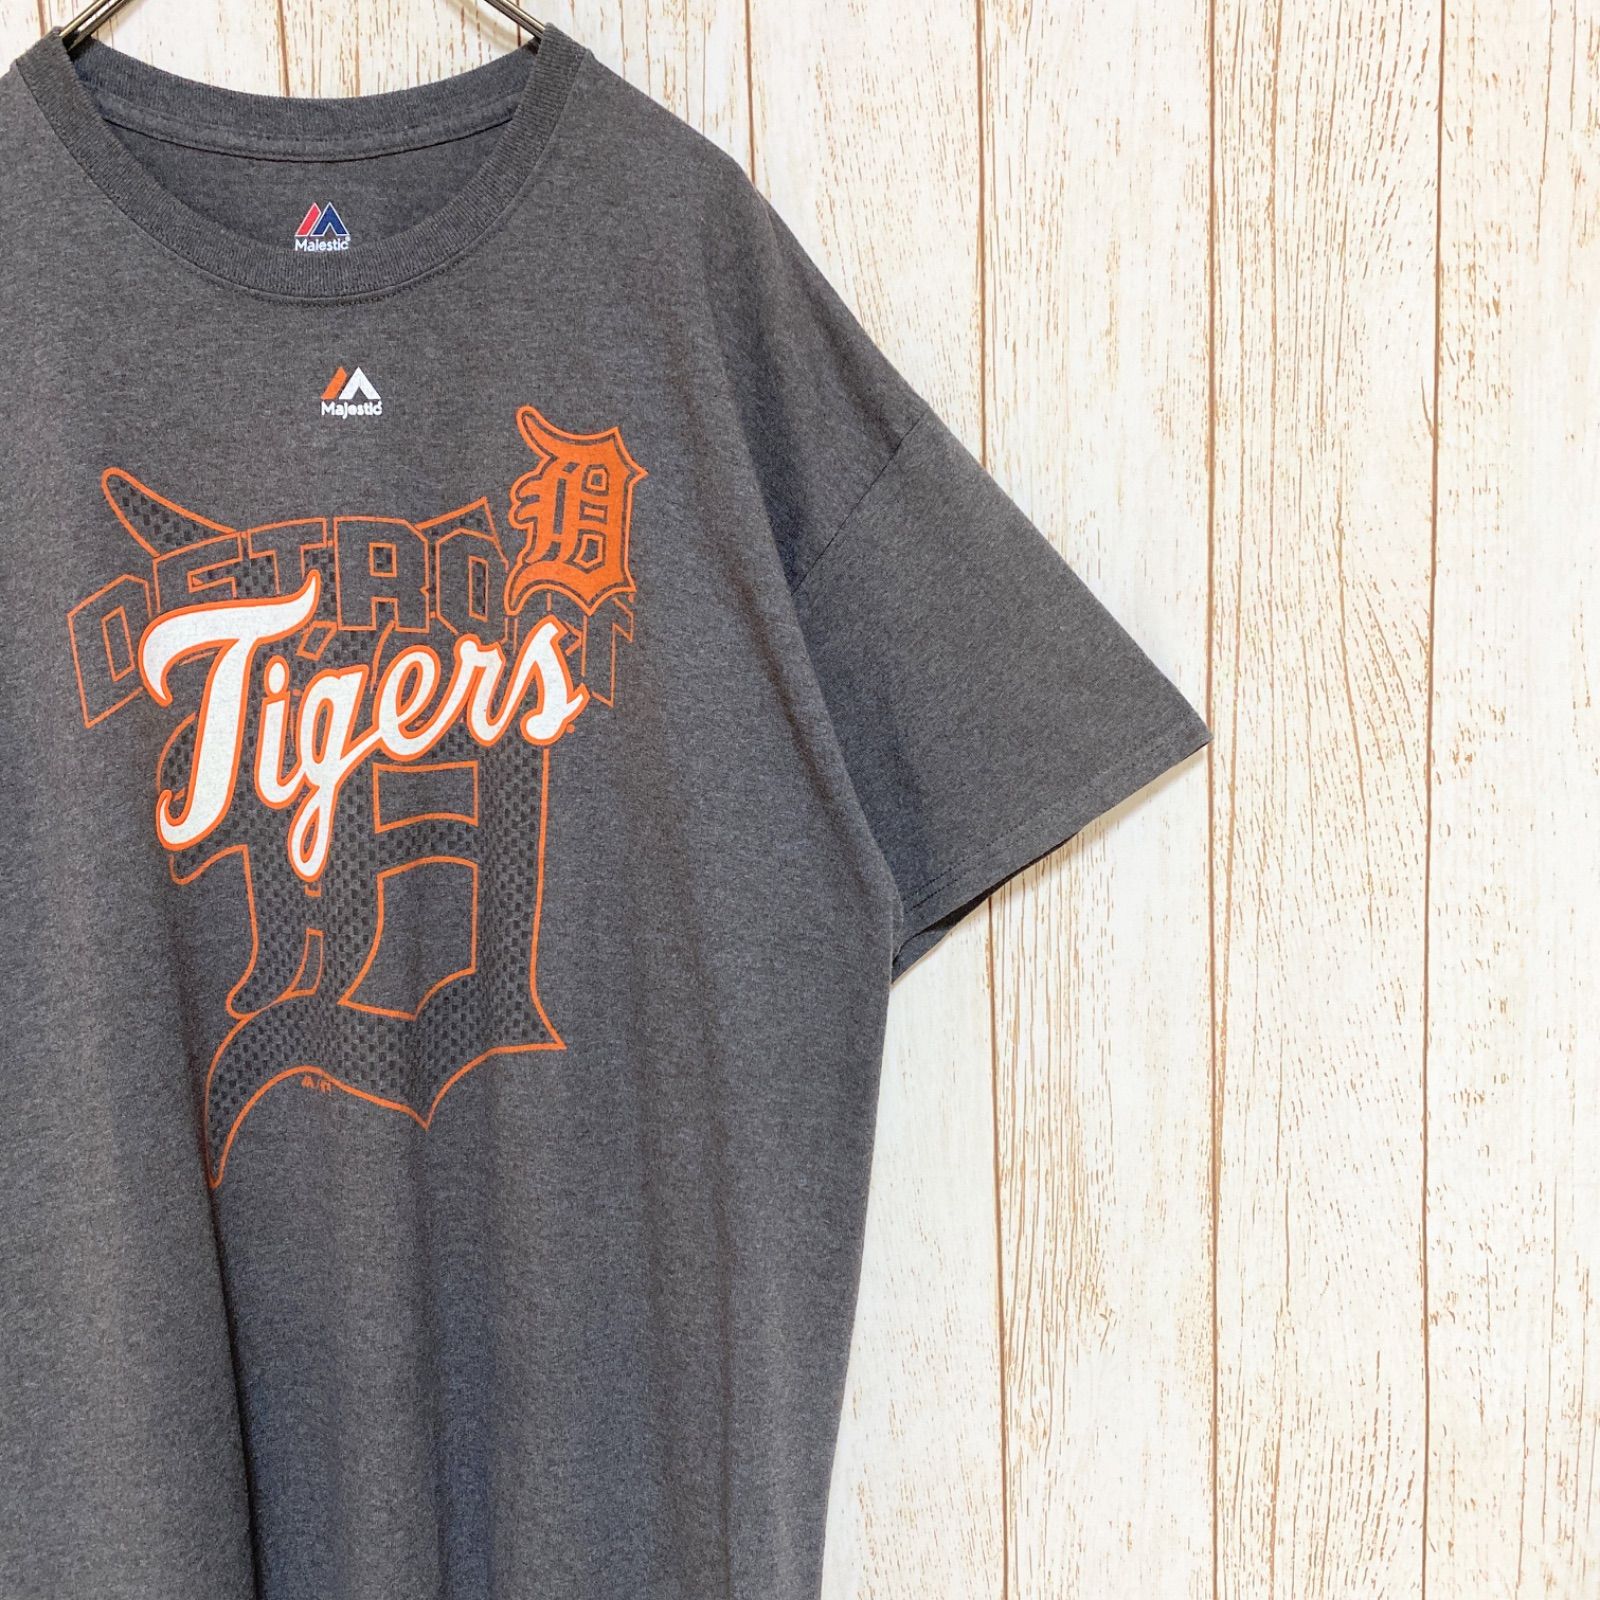 【海外 】Majestic MLB デトロイト・タイガース 公式 Tシャツ